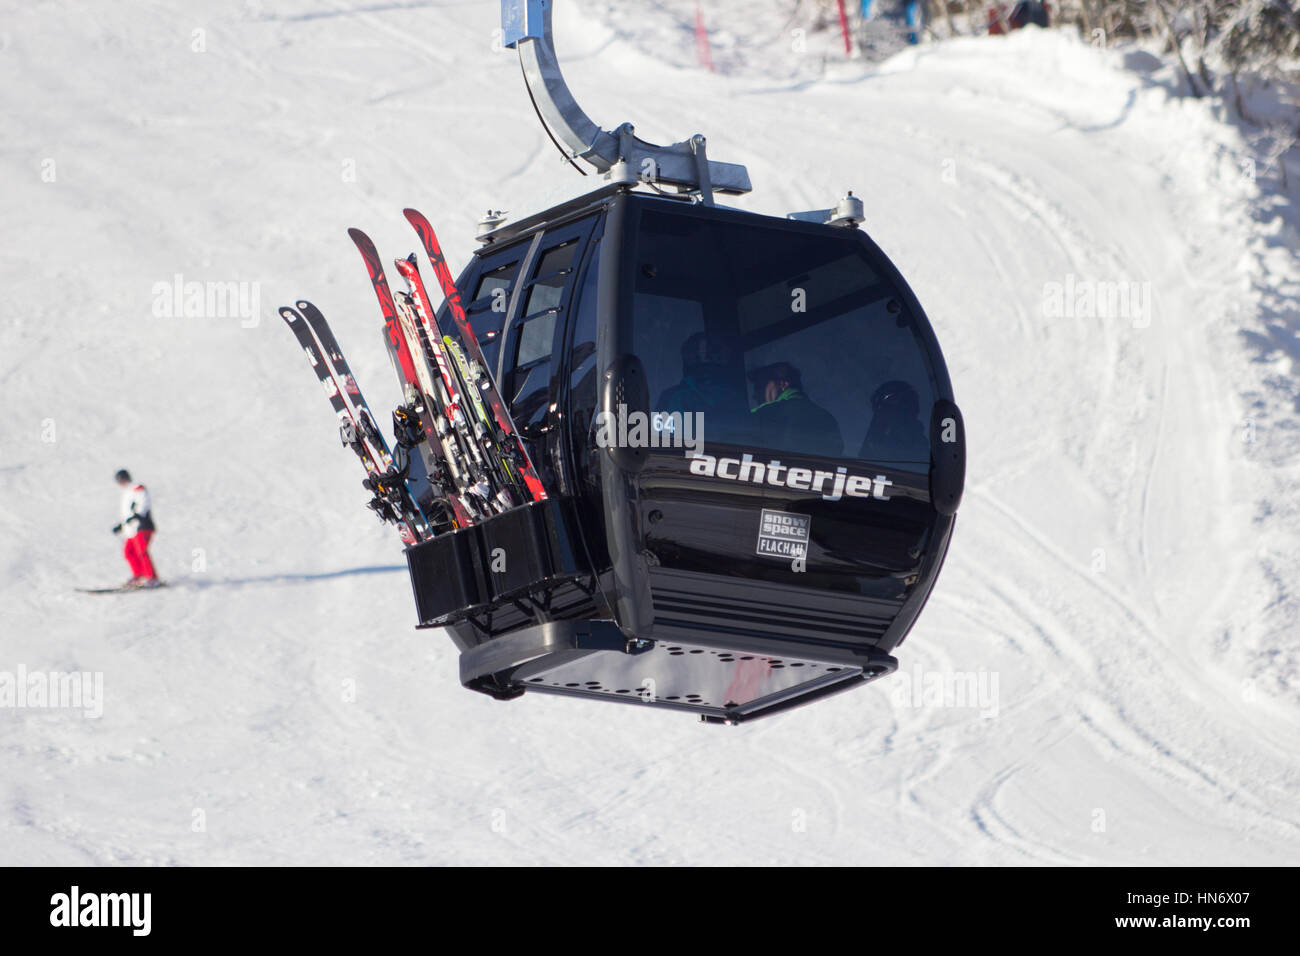 FLACHAU, Österreich - DEC 29: Skilift Kabel Stand der Piste in Flachau, Österreich am 29. Dezember 2012 steigen. Diese Pisten sind Bestandteil der Ski Armada Vernet Stockfoto